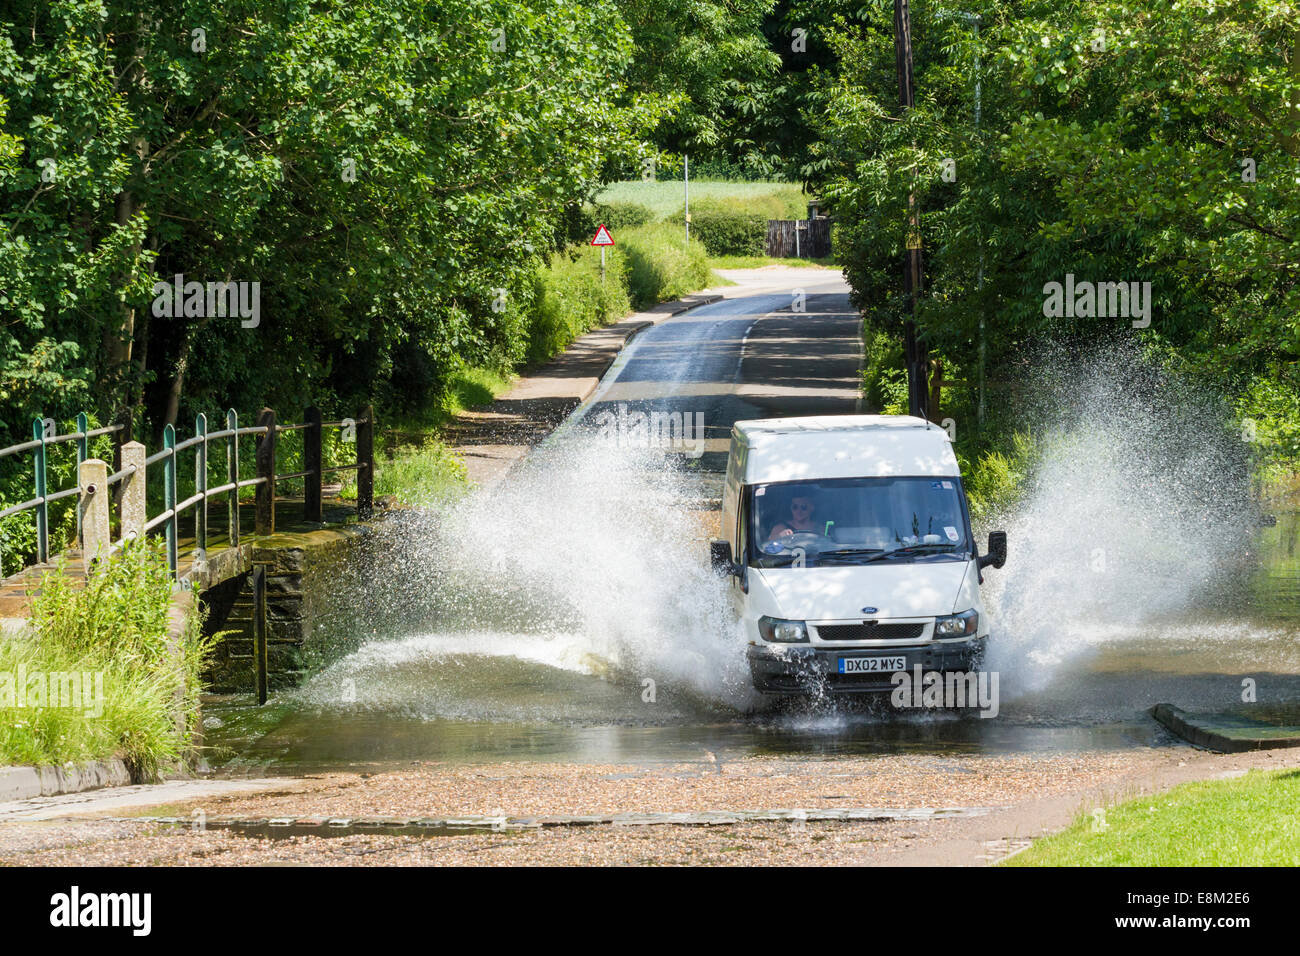 La conduite du véhicule par un gué sur la route et les projections d'eau. Rufford, Lancashire, England, UK Banque D'Images